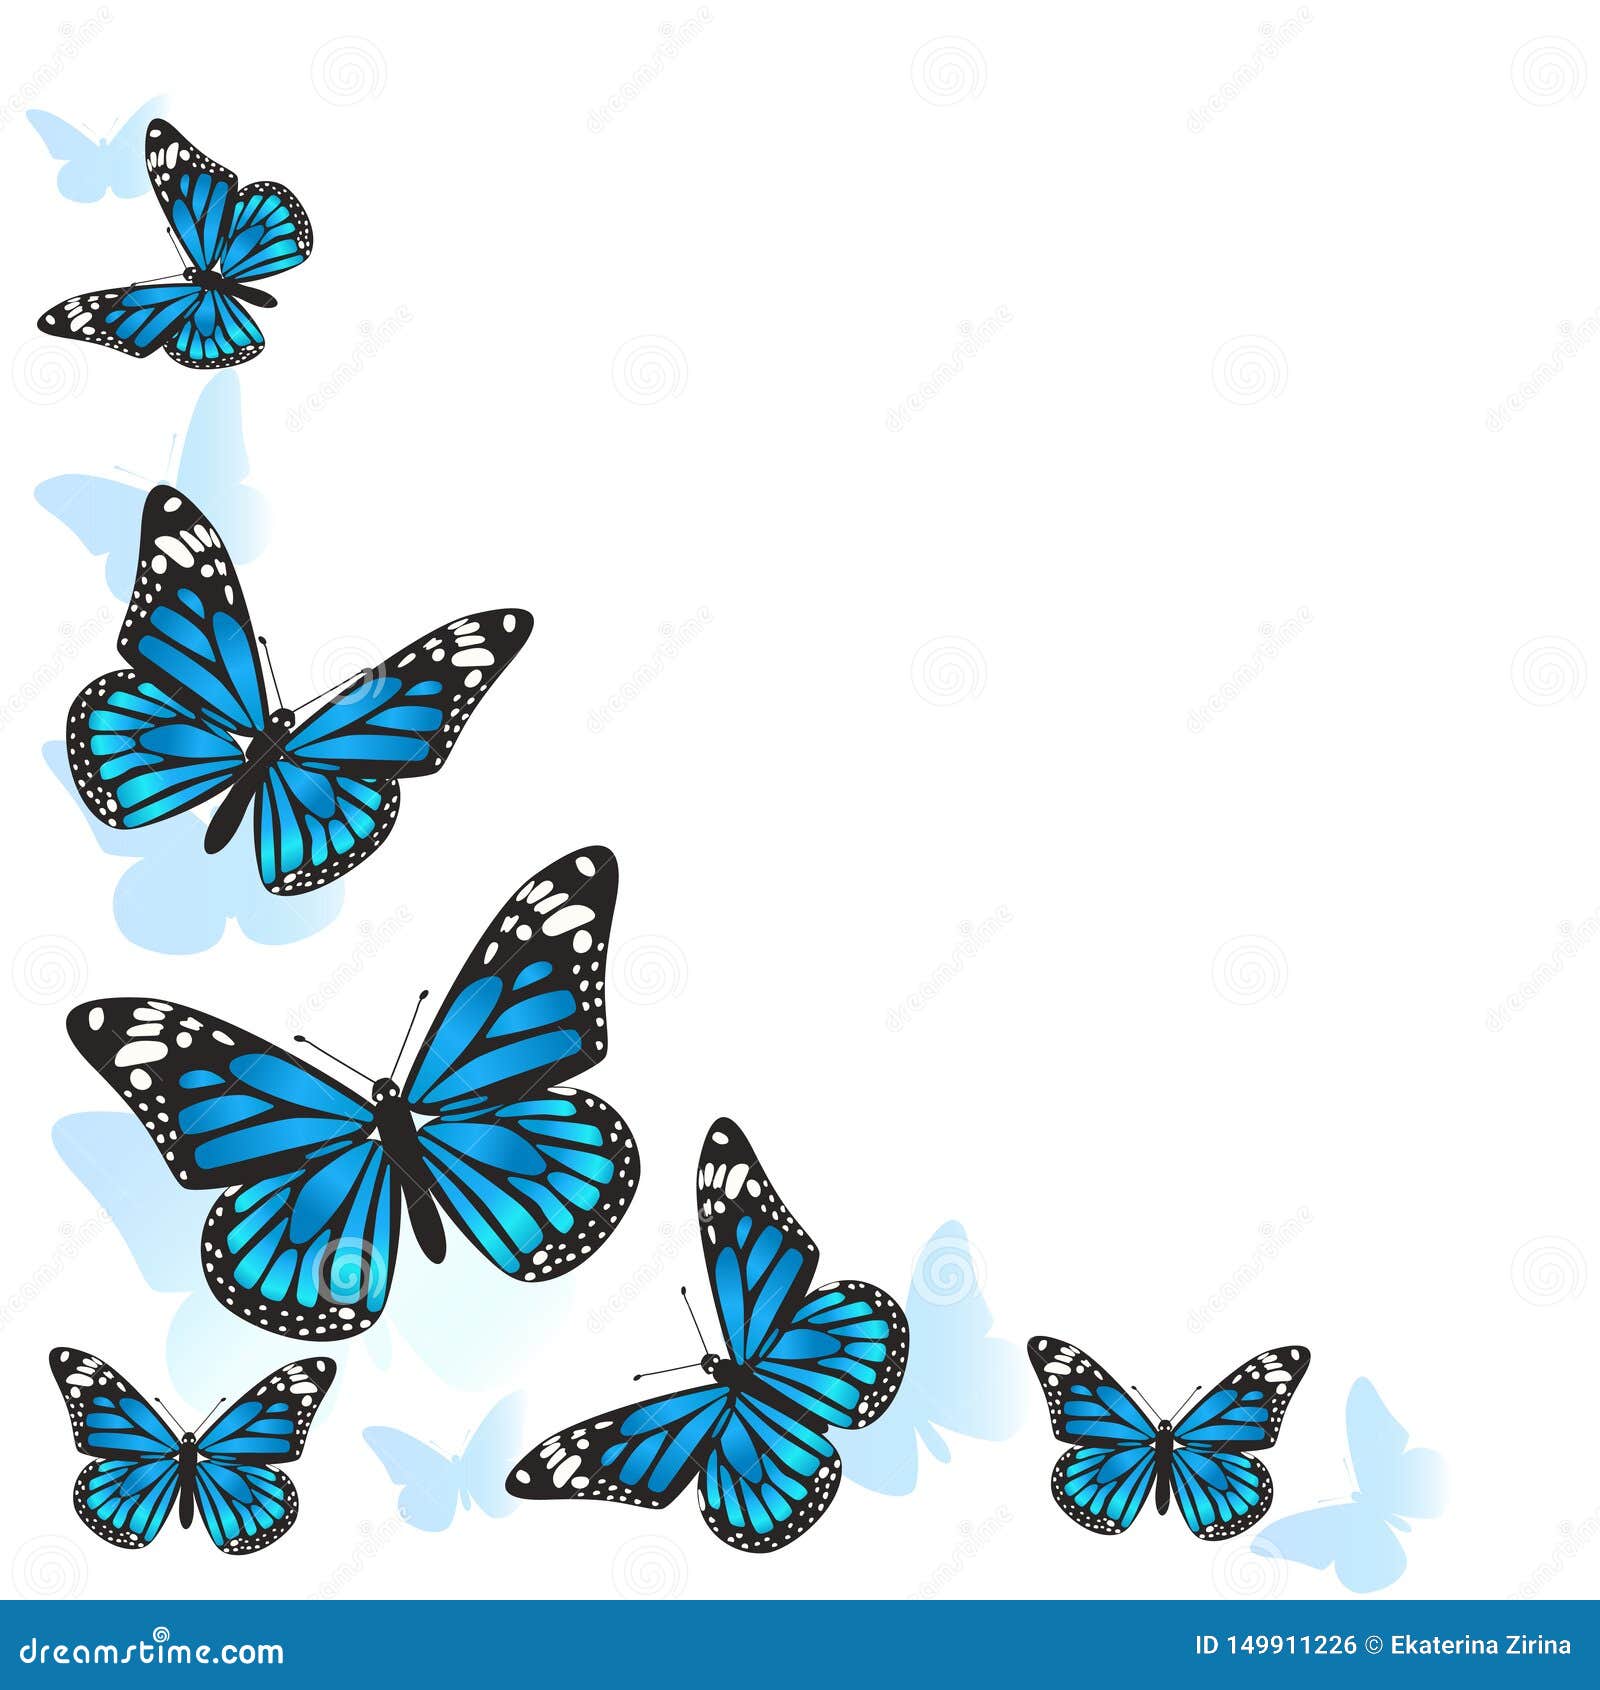 Khung hình bằng bướm xanh là cách tuyệt vời để trang trí hình ảnh, tạo nên một bức tranh tuyệt đẹp và độc đáo. Với nhiều hình dạng và màu sắc khác nhau, bạn có thể tạo ra sự kết hợp độc đáo cho bất kỳ loại hình ảnh nào, tạo nên một điểm nhấn cho thiết bị.